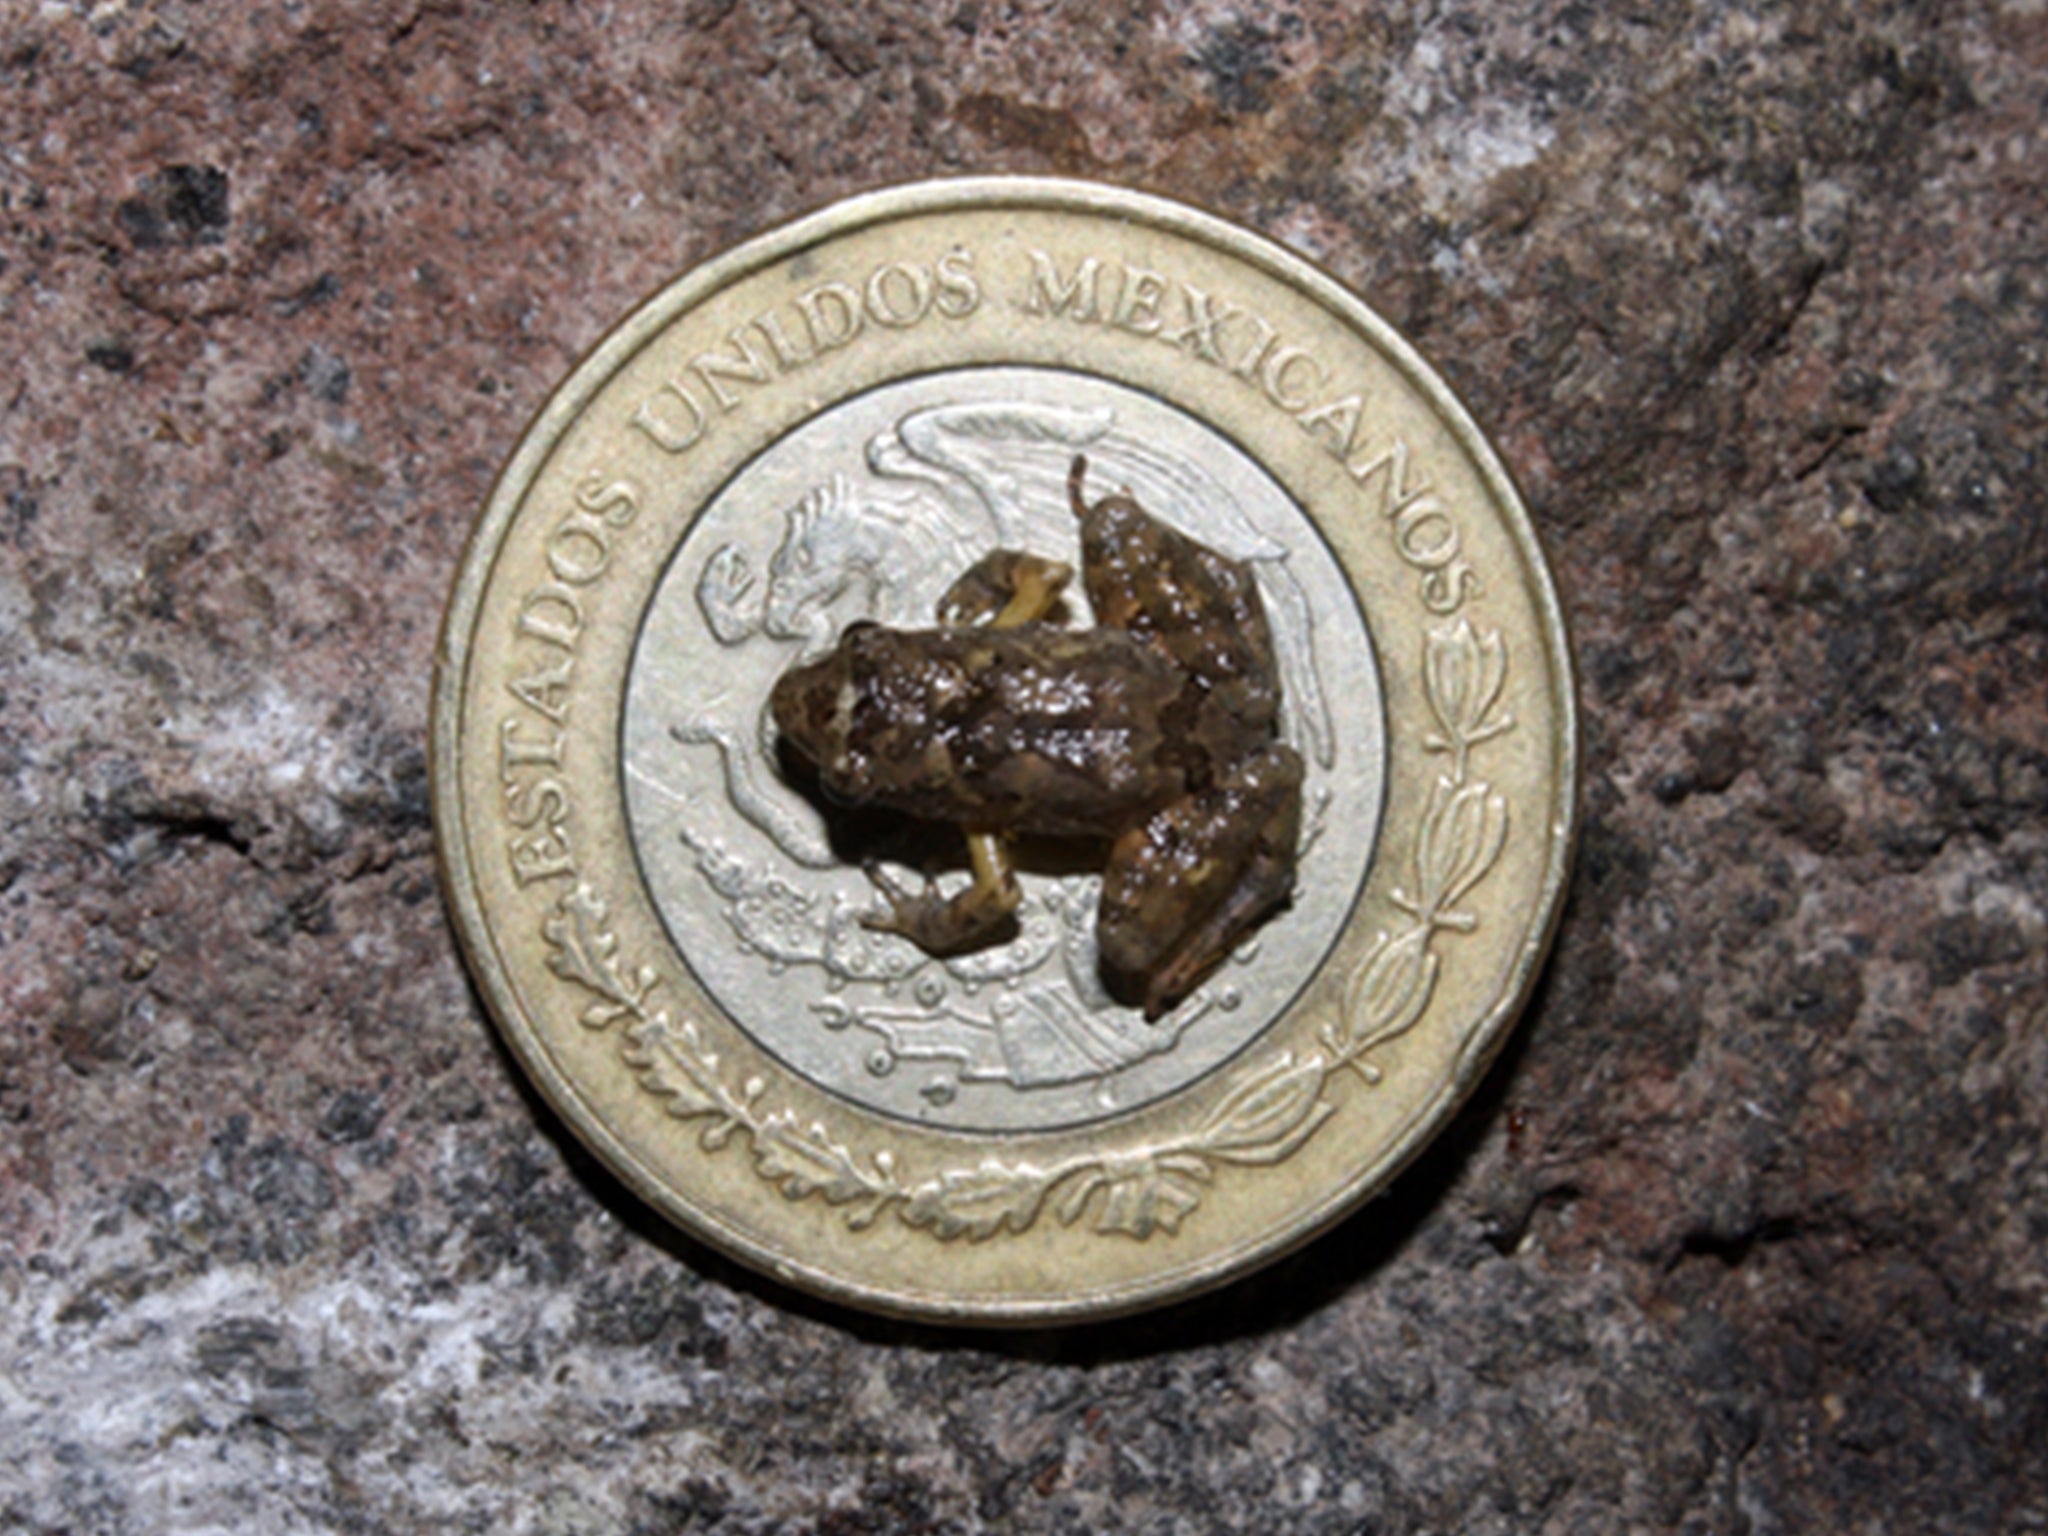 La rana recién descubierta sobre una moneda de 10 pesos de su nativo México